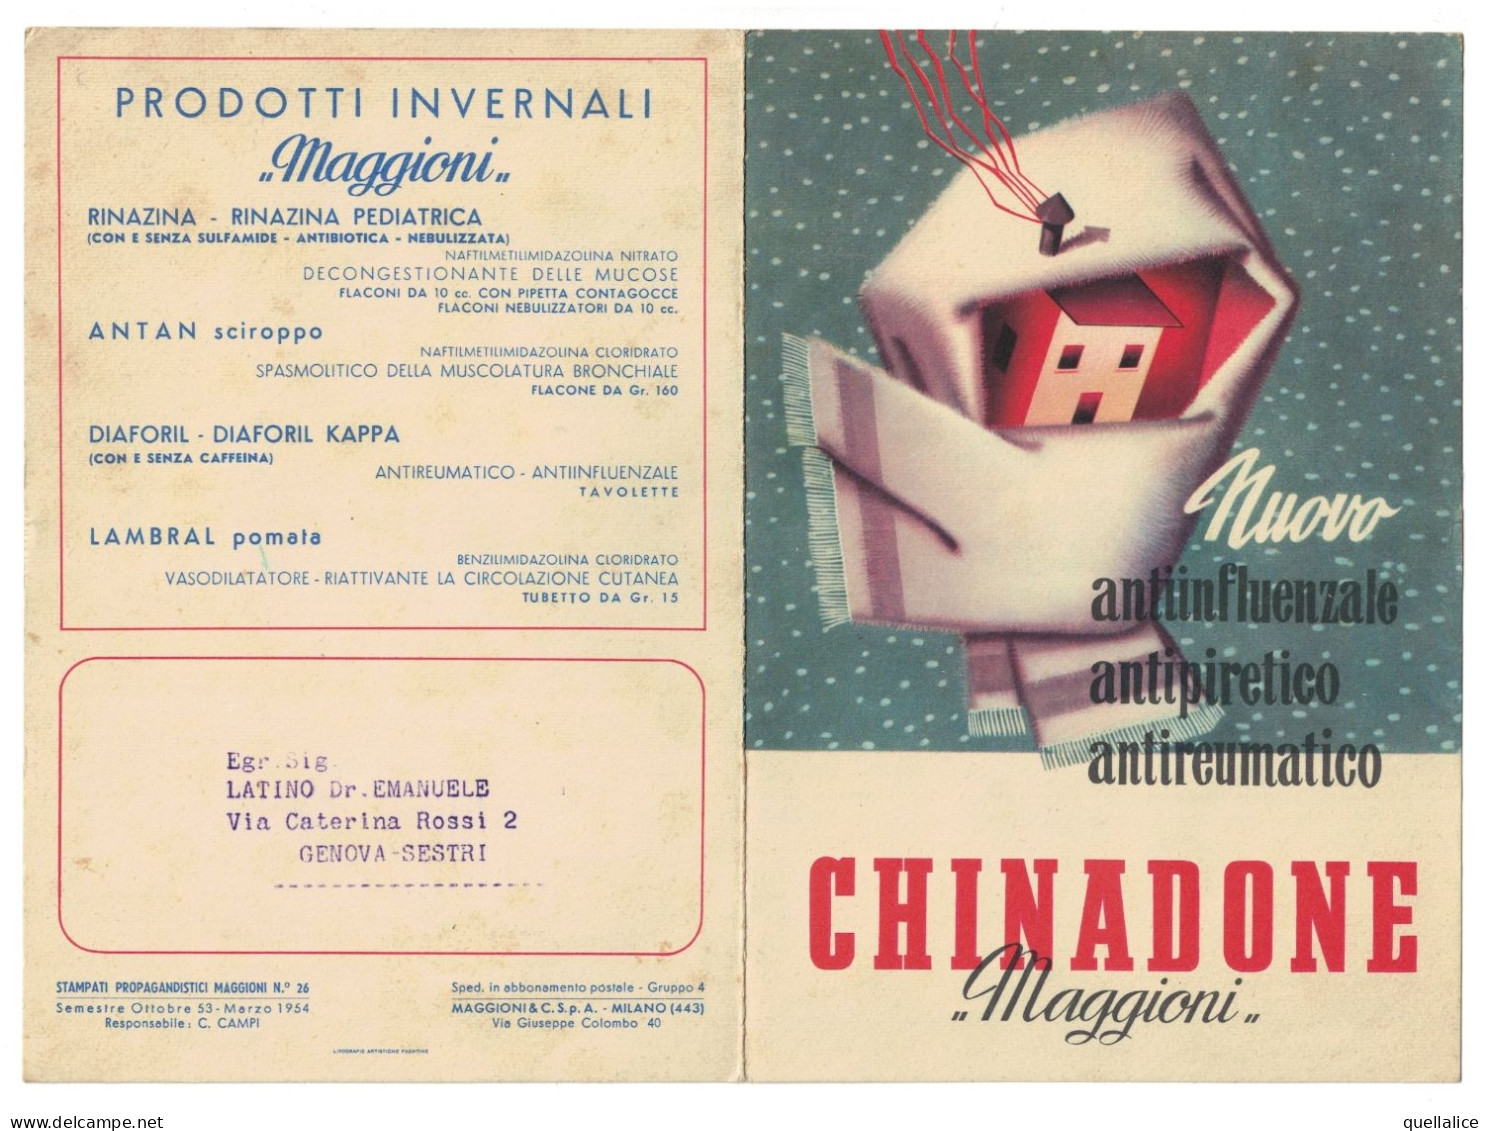 03916 "CHINADONE - MAGGIONI & C. S.PA. - NUOVO ANTIINFLUENZALE, ANTIPIRETICO, ANTIREUMATICO" PUBBL. 1954 - Reclame